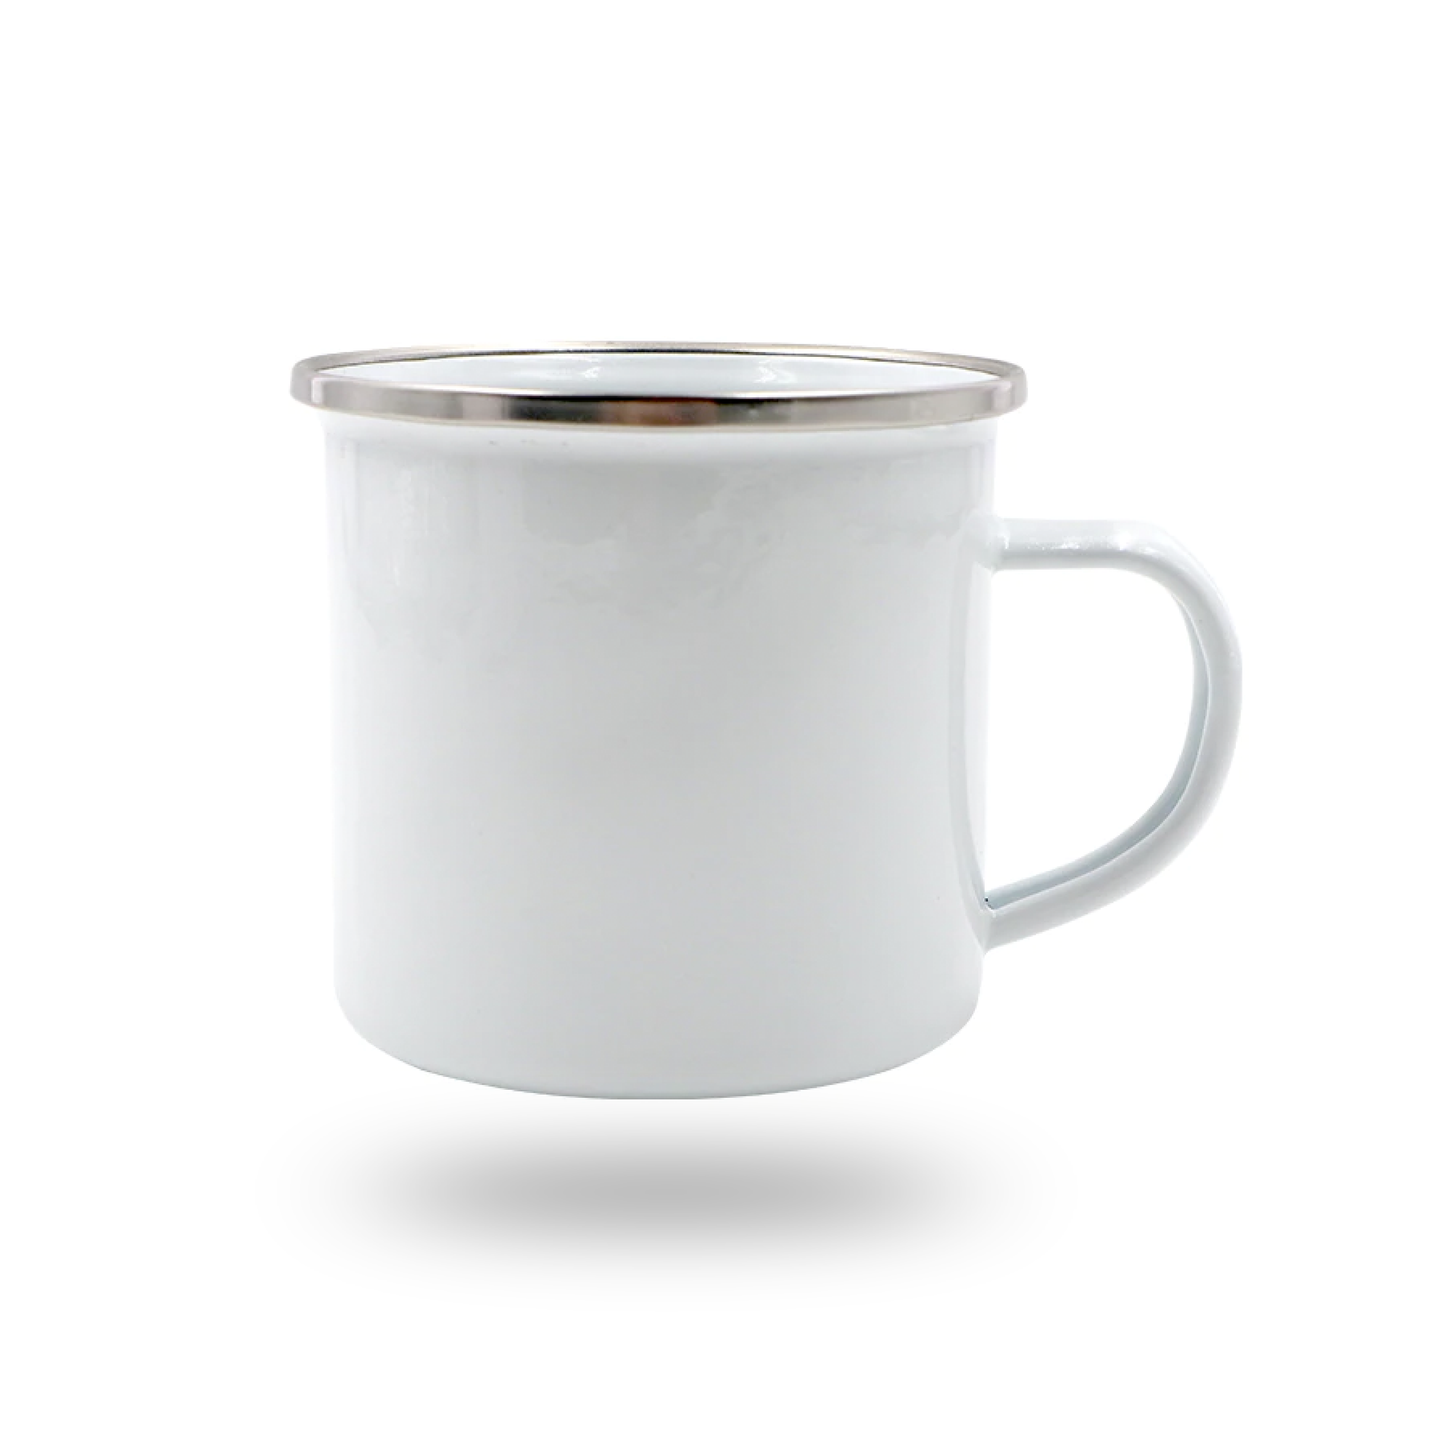 Metal Coffee Mug with Lid - 10 oz.